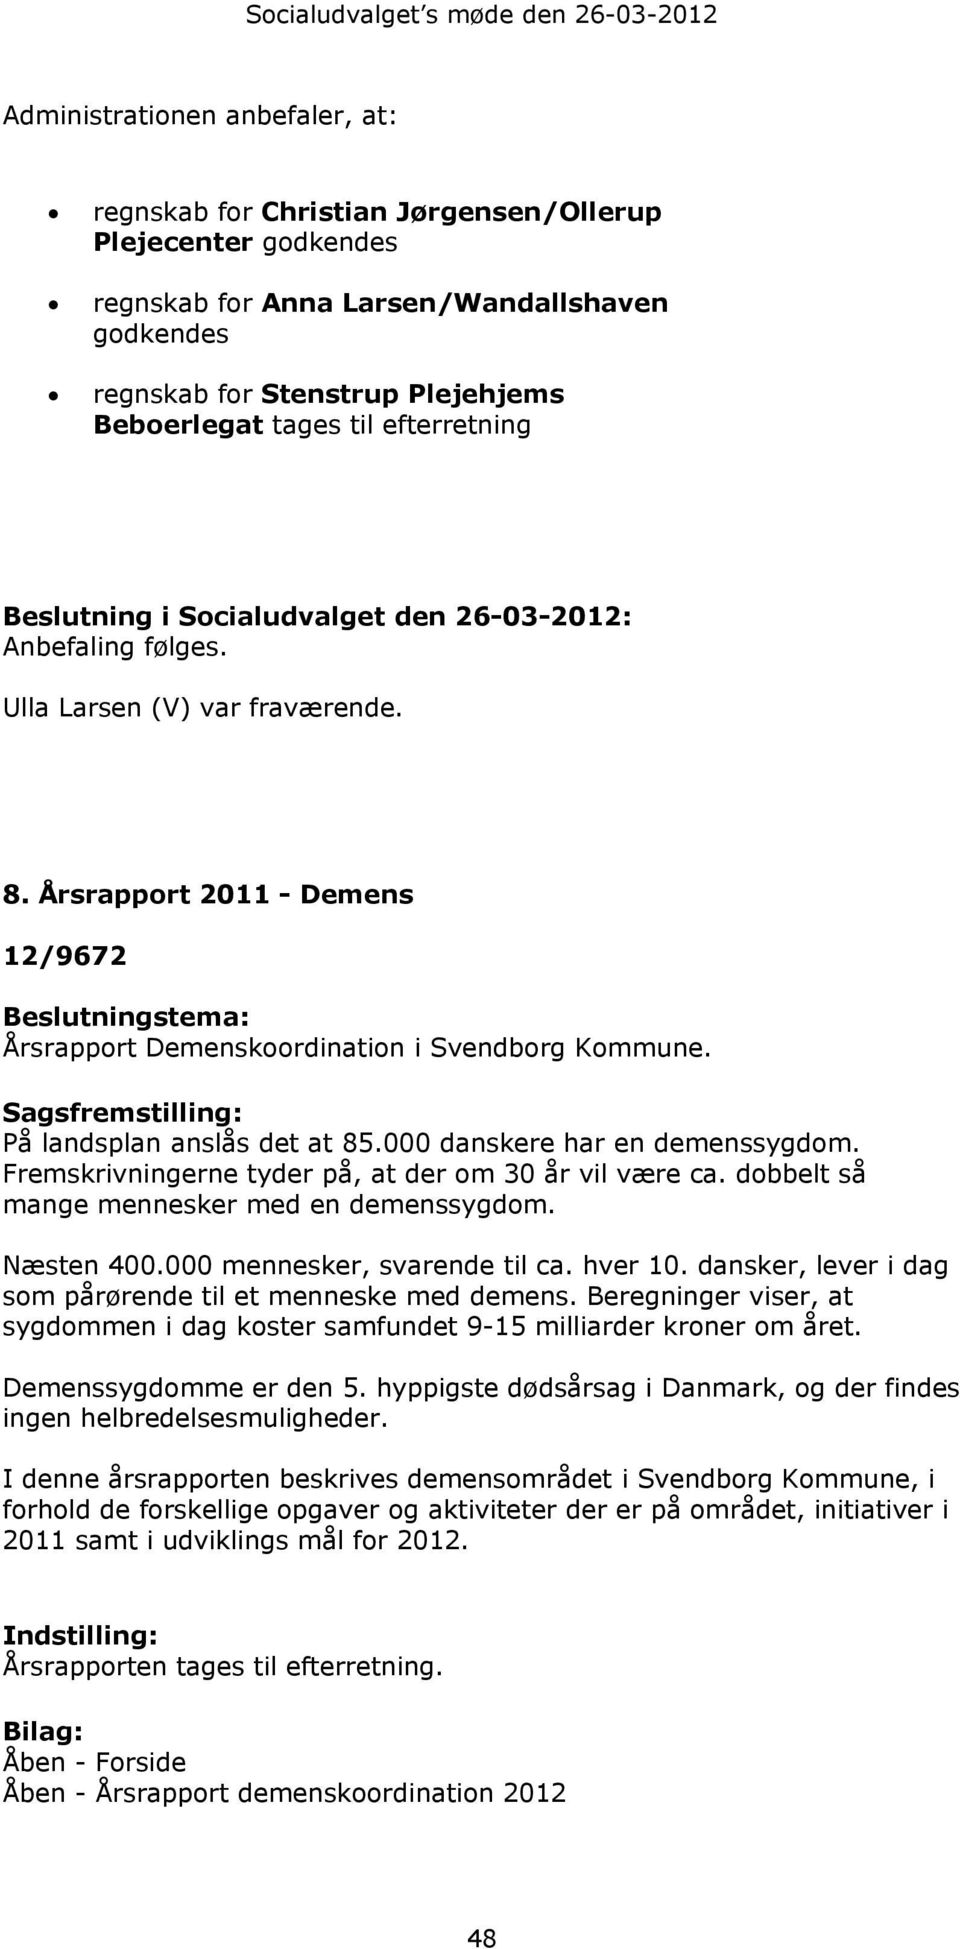 Årsrapport 2011 - Demens 12/9672 Beslutningstema: Årsrapport Demenskoordination i Svendborg Kommune. Sagsfremstilling: På landsplan anslås det at 85.000 danskere har en demenssygdom.